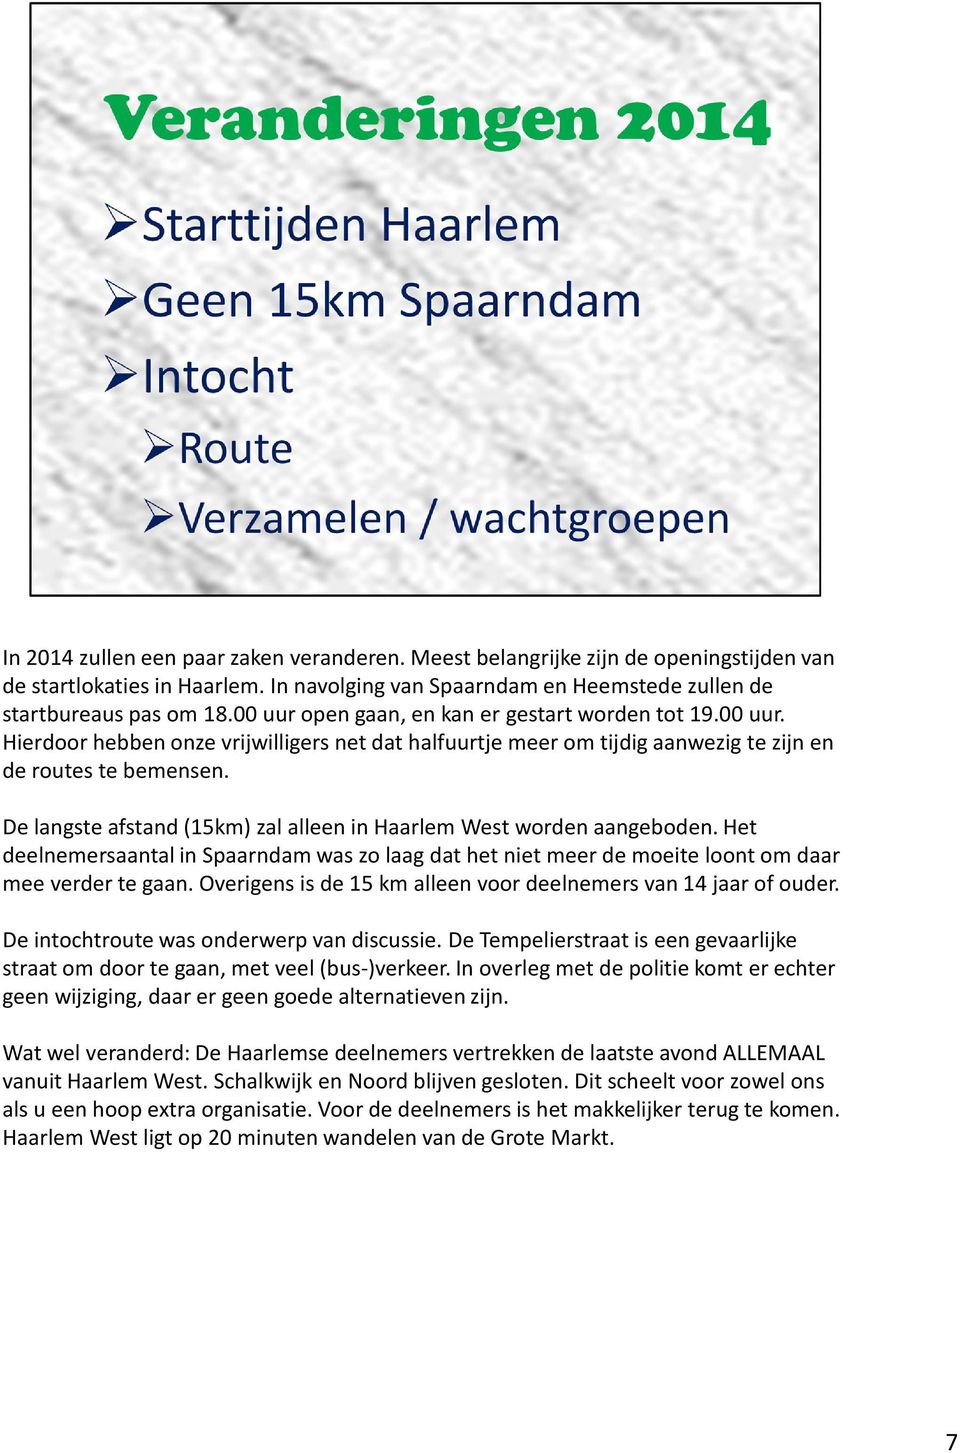 De langste afstand (15km) zal alleen in Haarlem West worden aangeboden. Het deelnemersaantal in Spaarndamwas zo laag dat het niet meer de moeite loont om daar mee verder te gaan.